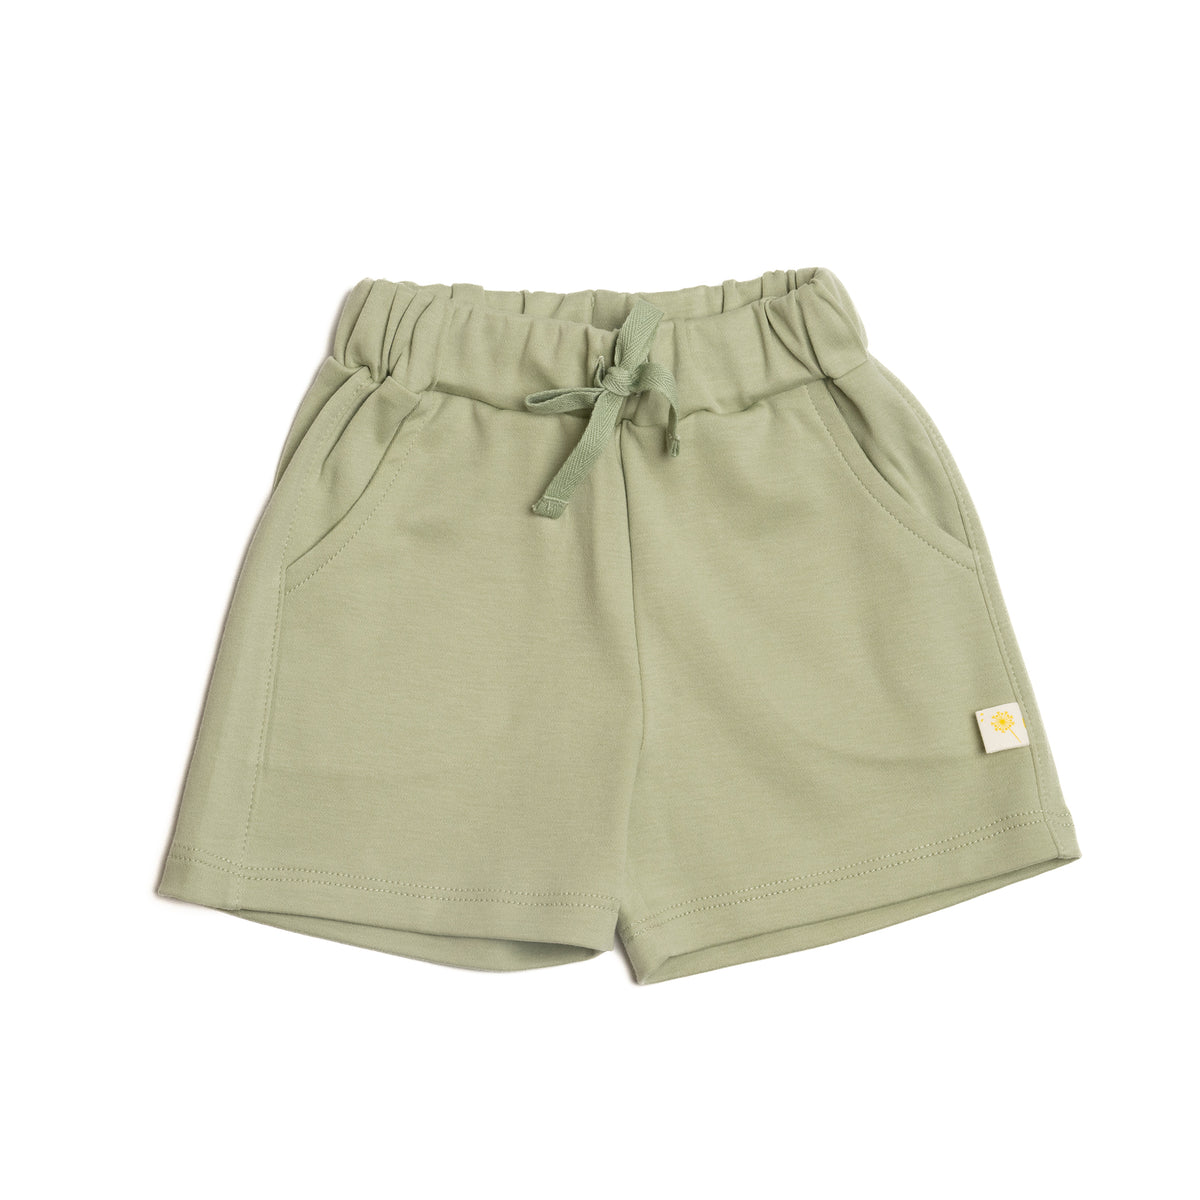 Comfy shorts - Light olive